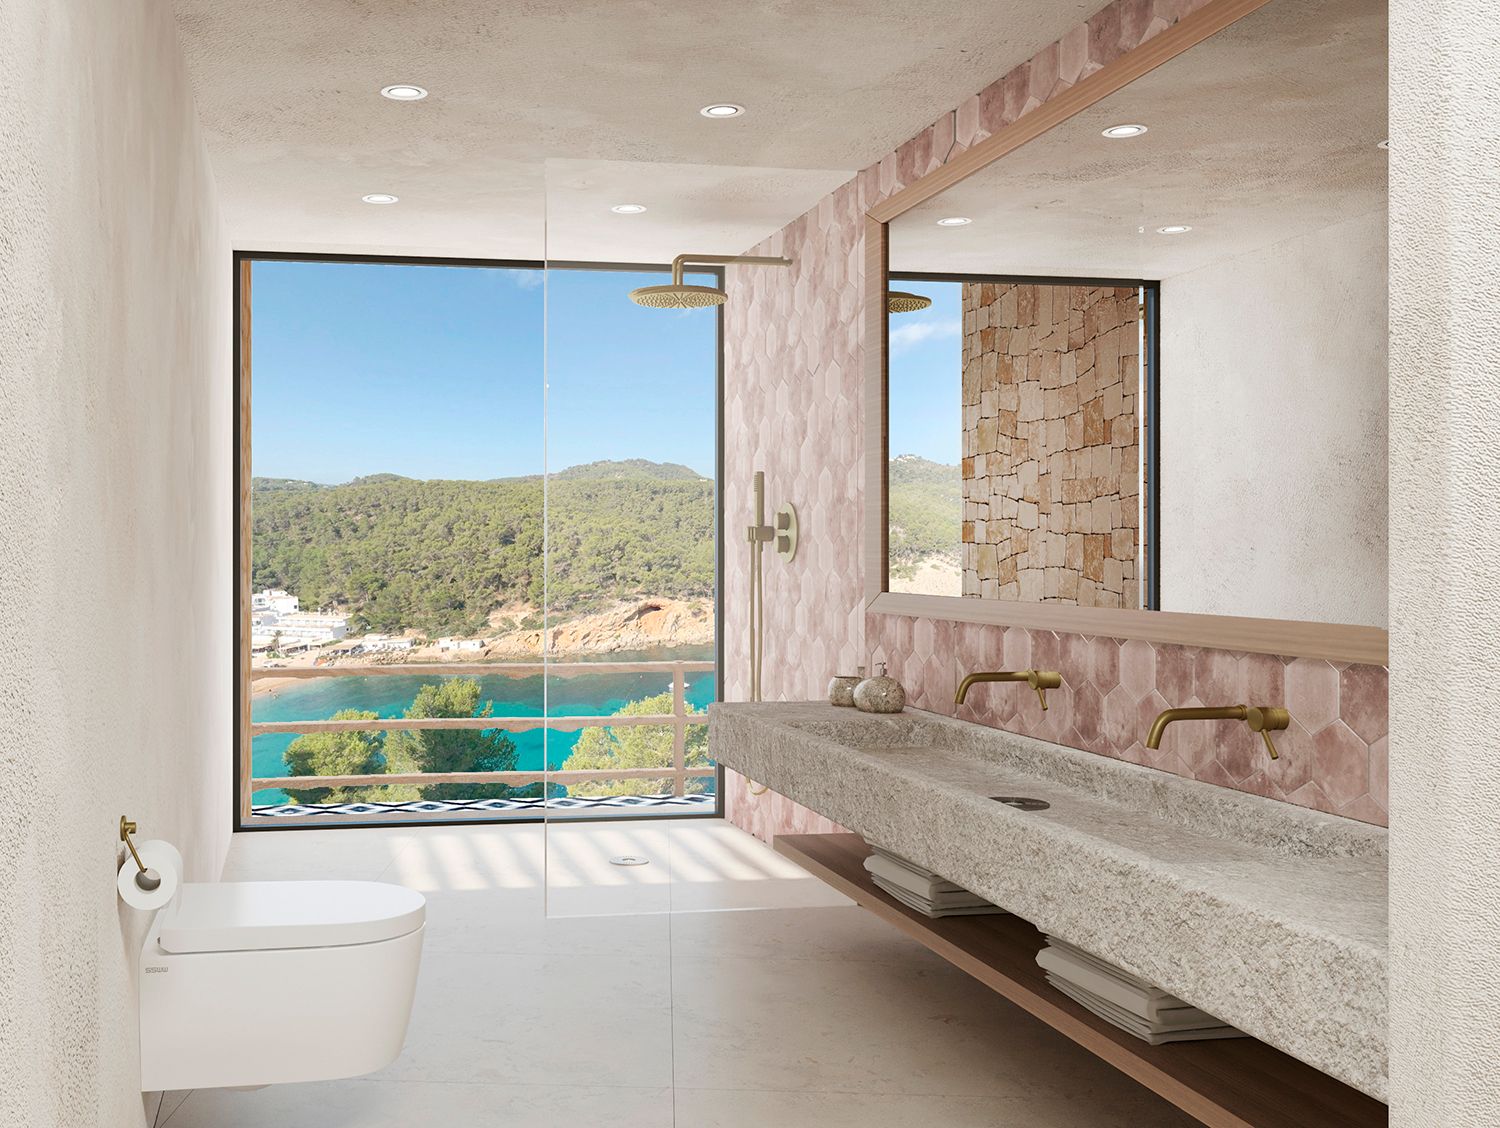 Project van een villa in San Miguel met uitzicht op zee